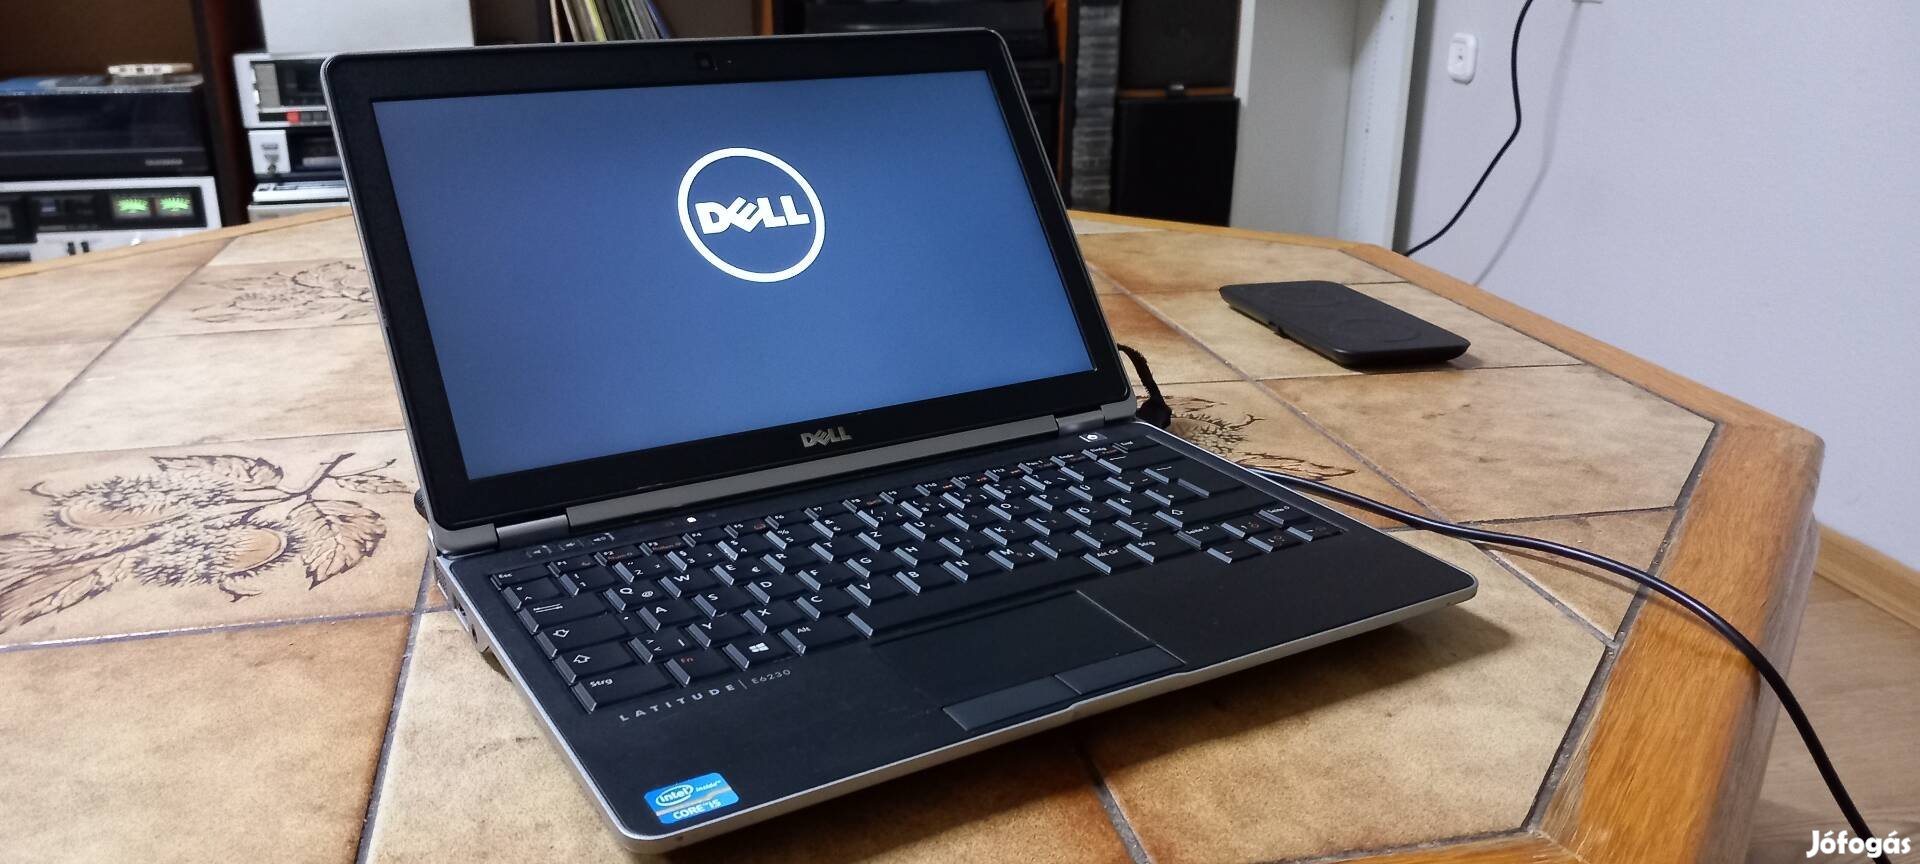 Laptop i5 Dell kamera SSD billentyűzet világítás 